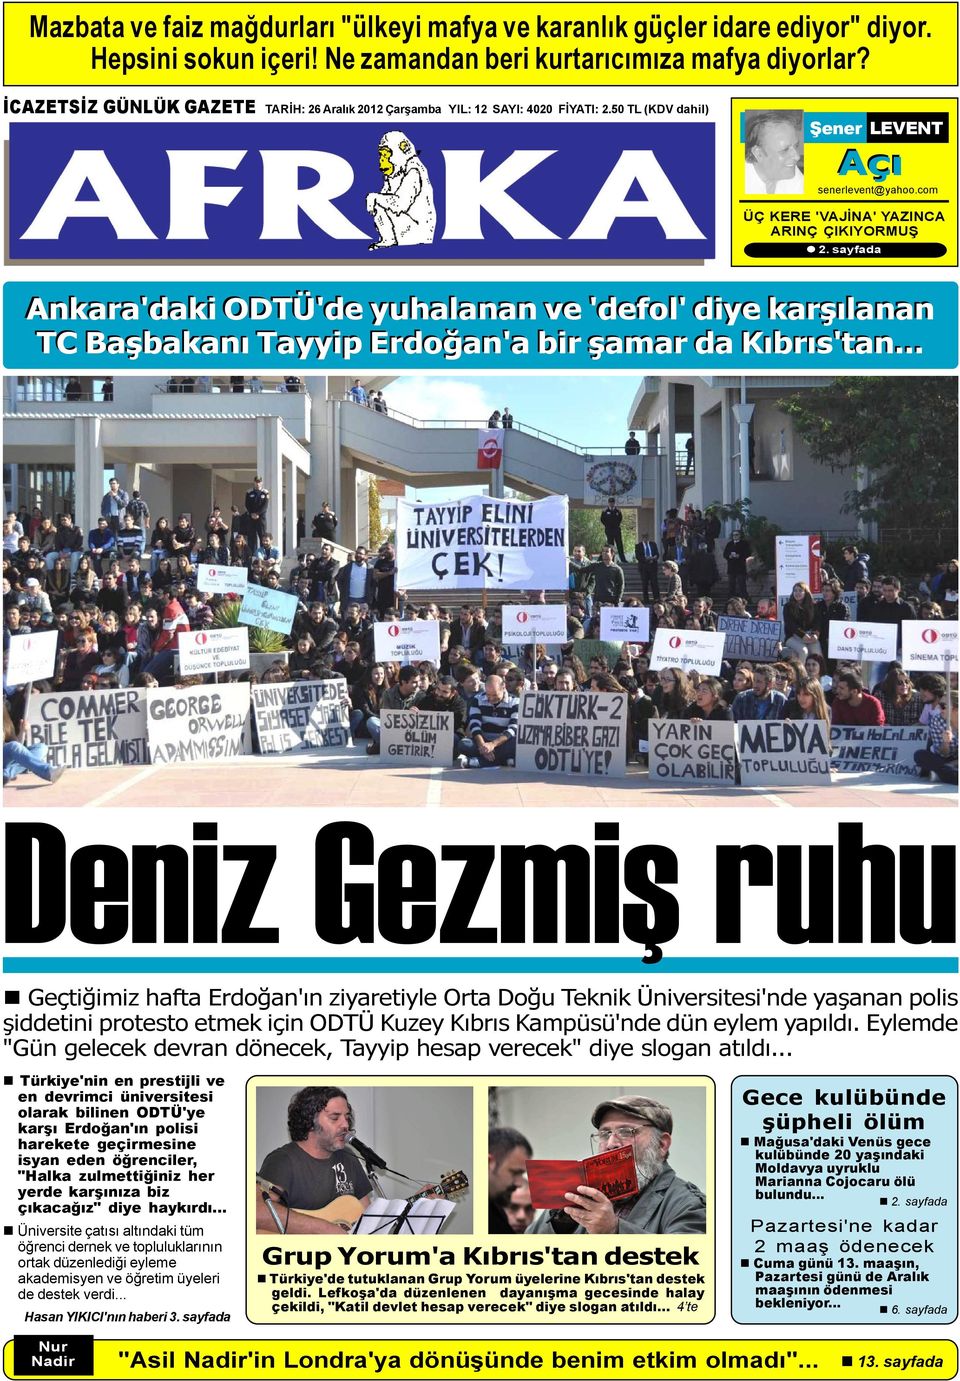 sayfada Ankara'daki ODTÜ'de yuhalanan ve 'defol' diye karþýlanan TC Baþbakaný Tayyip Erdoðan'a bir þamar da Kýbrýs'tan.